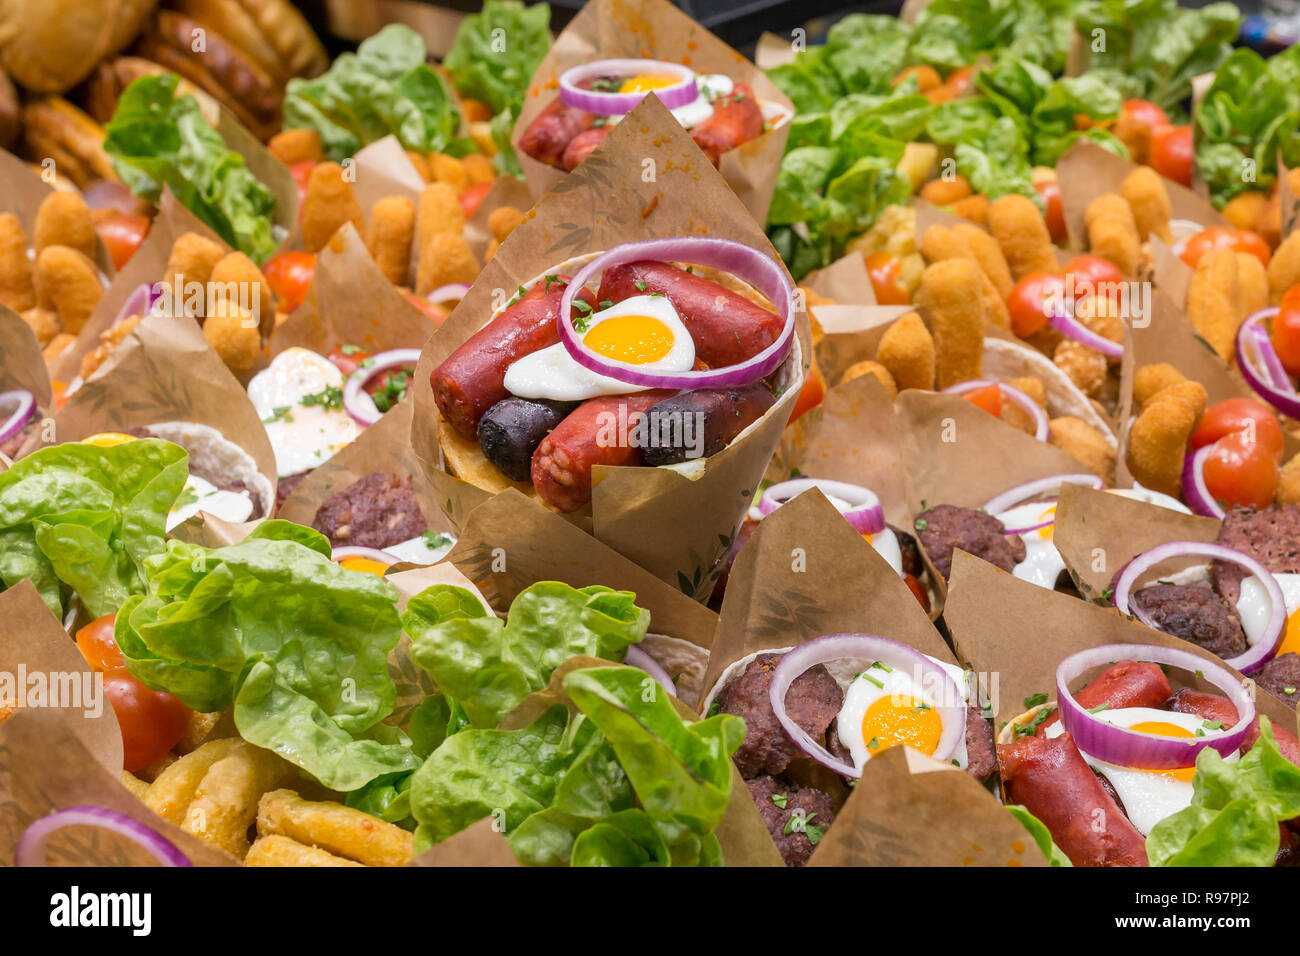 Meat snacks for sale at  Mercat de Sant Josep de la Boqueria, a large public market in Barcelona, Spain. Stock Photo